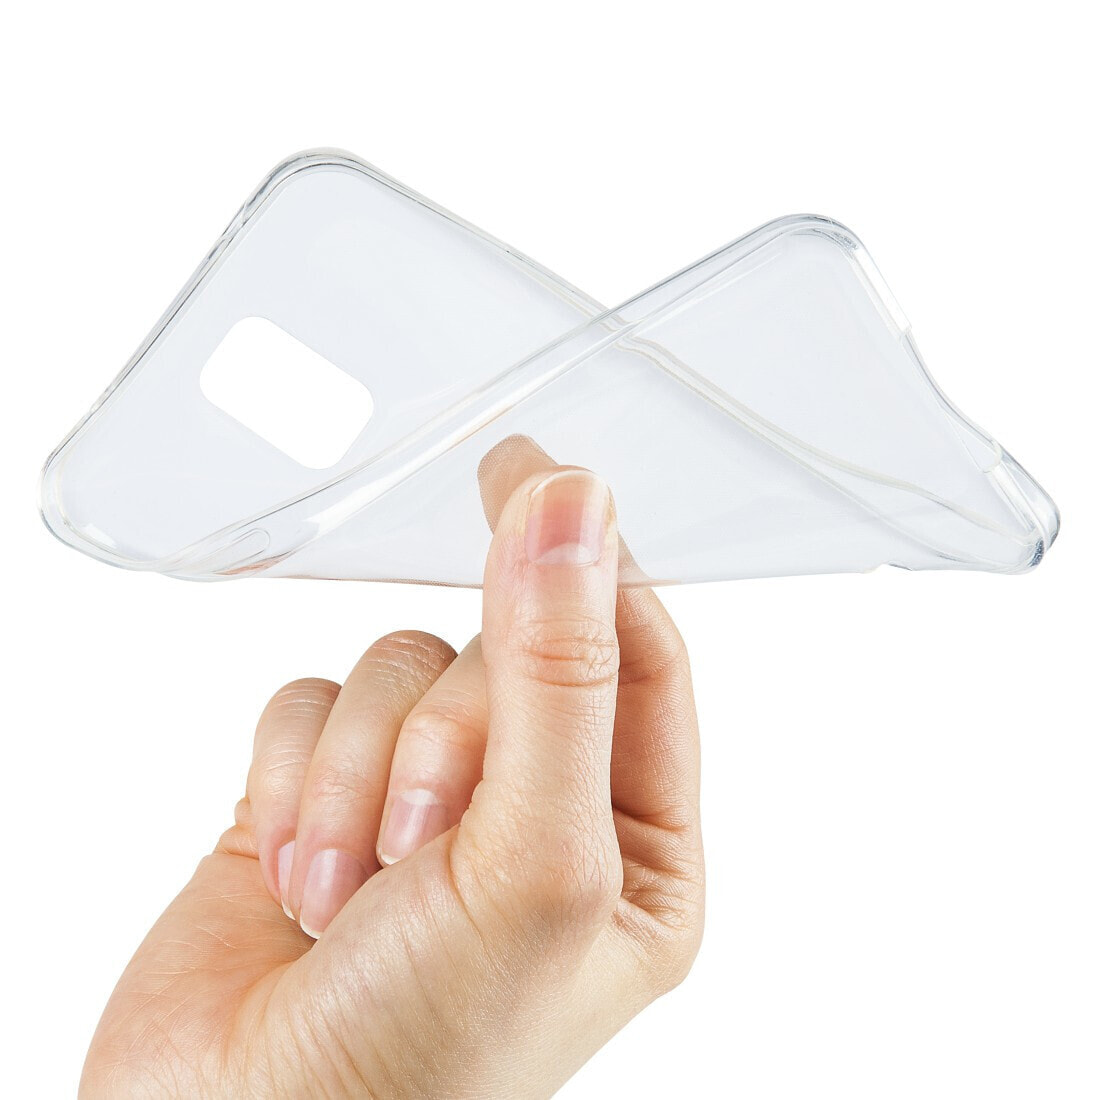 Hama Crystal Clear чехол для мобильного телефона Крышка Прозрачный 00195469